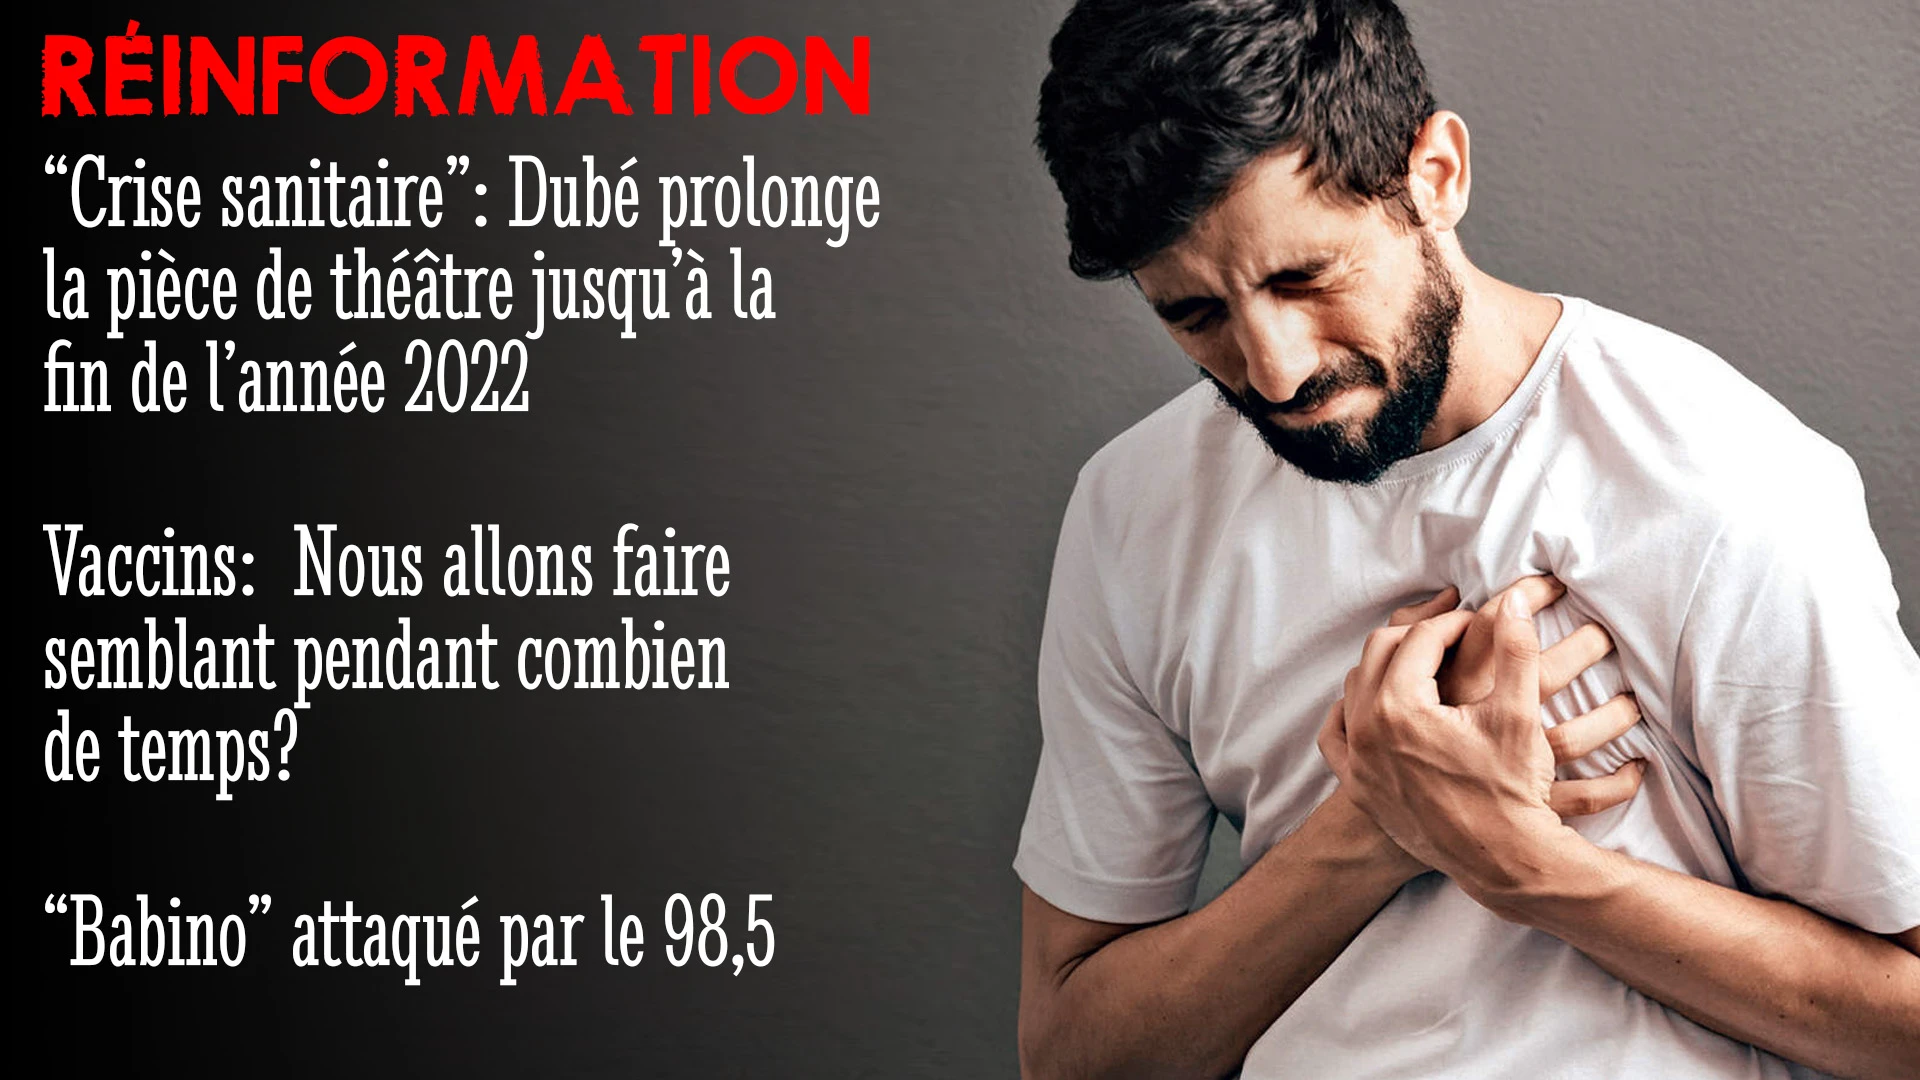 RÉINFORMATION 17/03/2022 – DUBÉ PROLONGE LE DÉLIRE SANITAIRE JUSQU’À LA FIN 2022